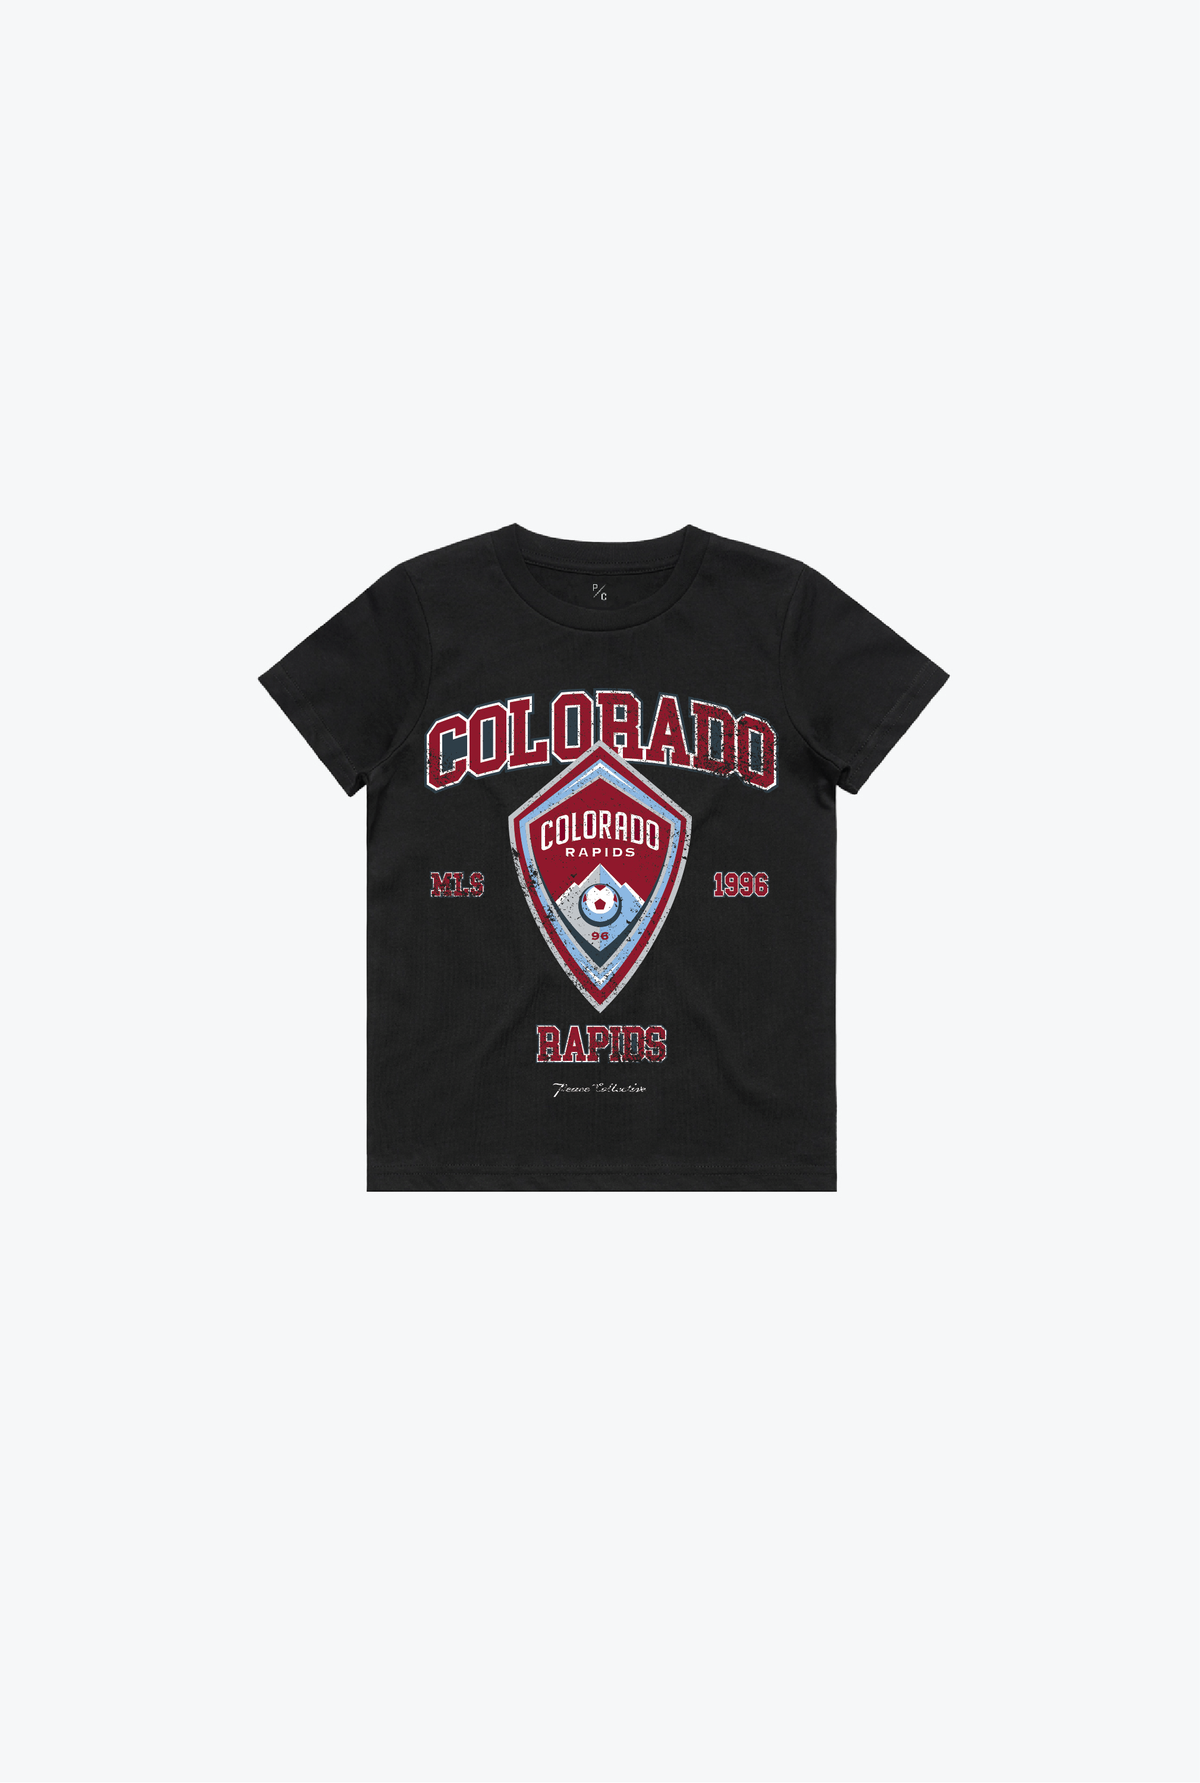 Colorado Rapids Vintage Washed Kids T-Shirt - Black